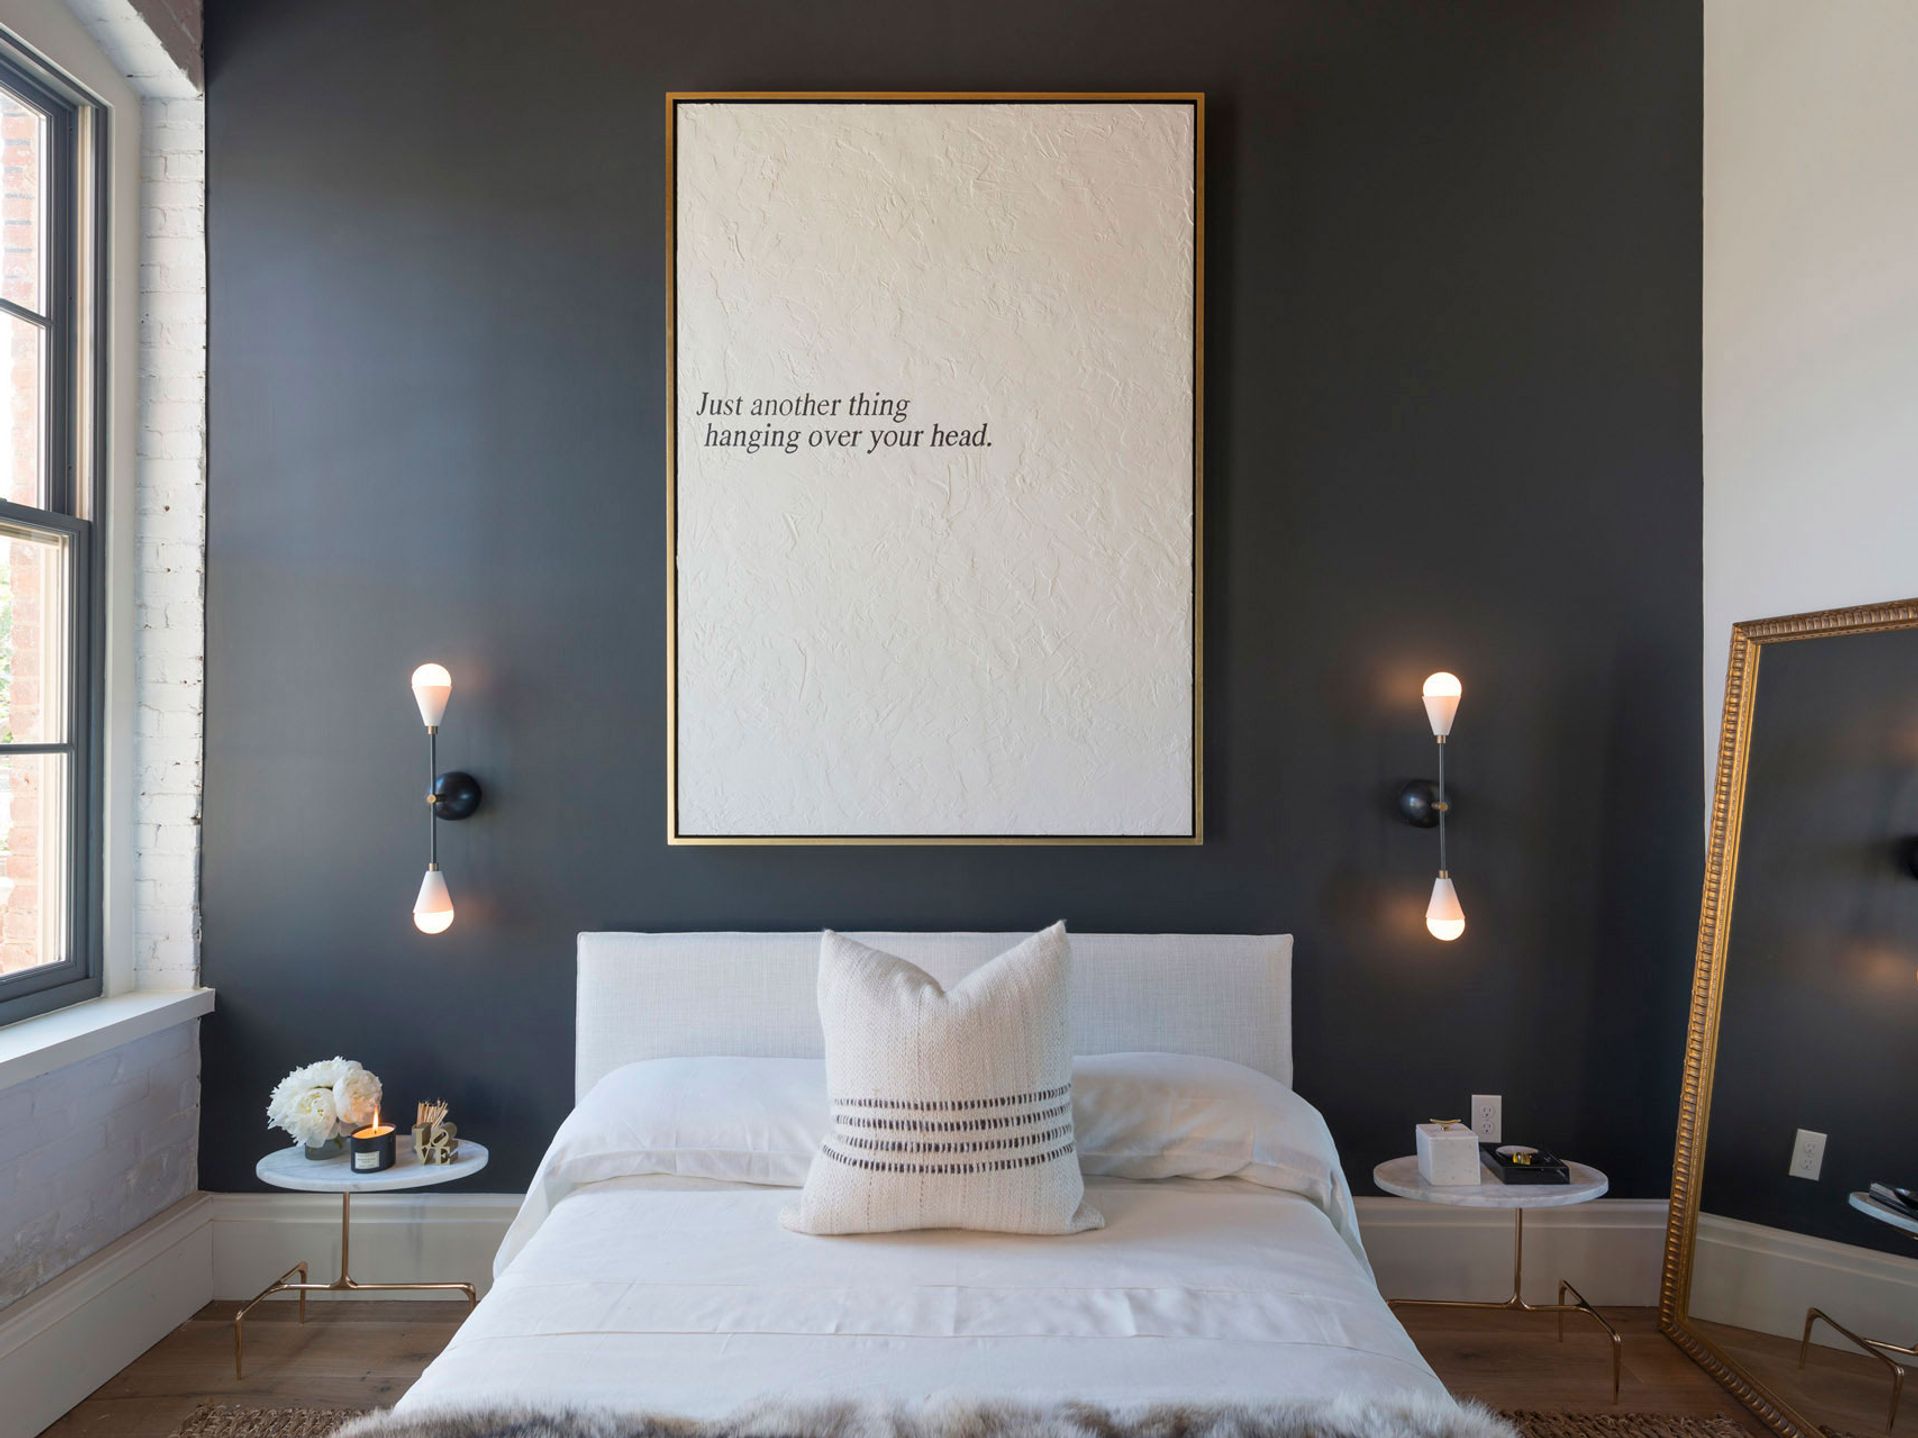 14 ideas para decorar la pared de tu dormitorio (¡fáciles y actuales!)